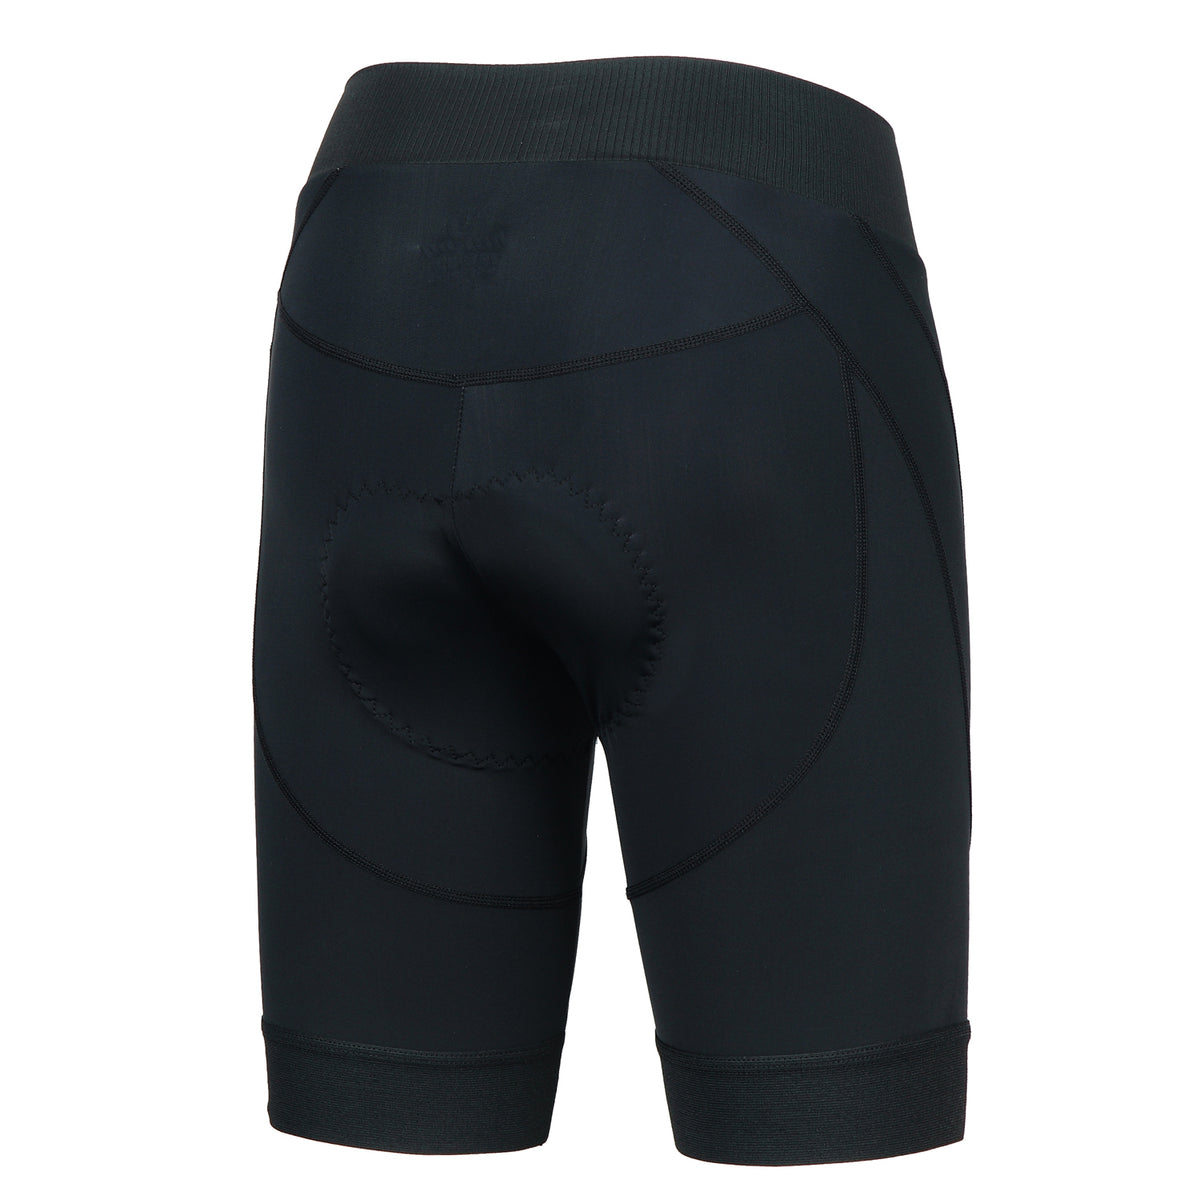 Women's Black Gel Padded Cycle Pants